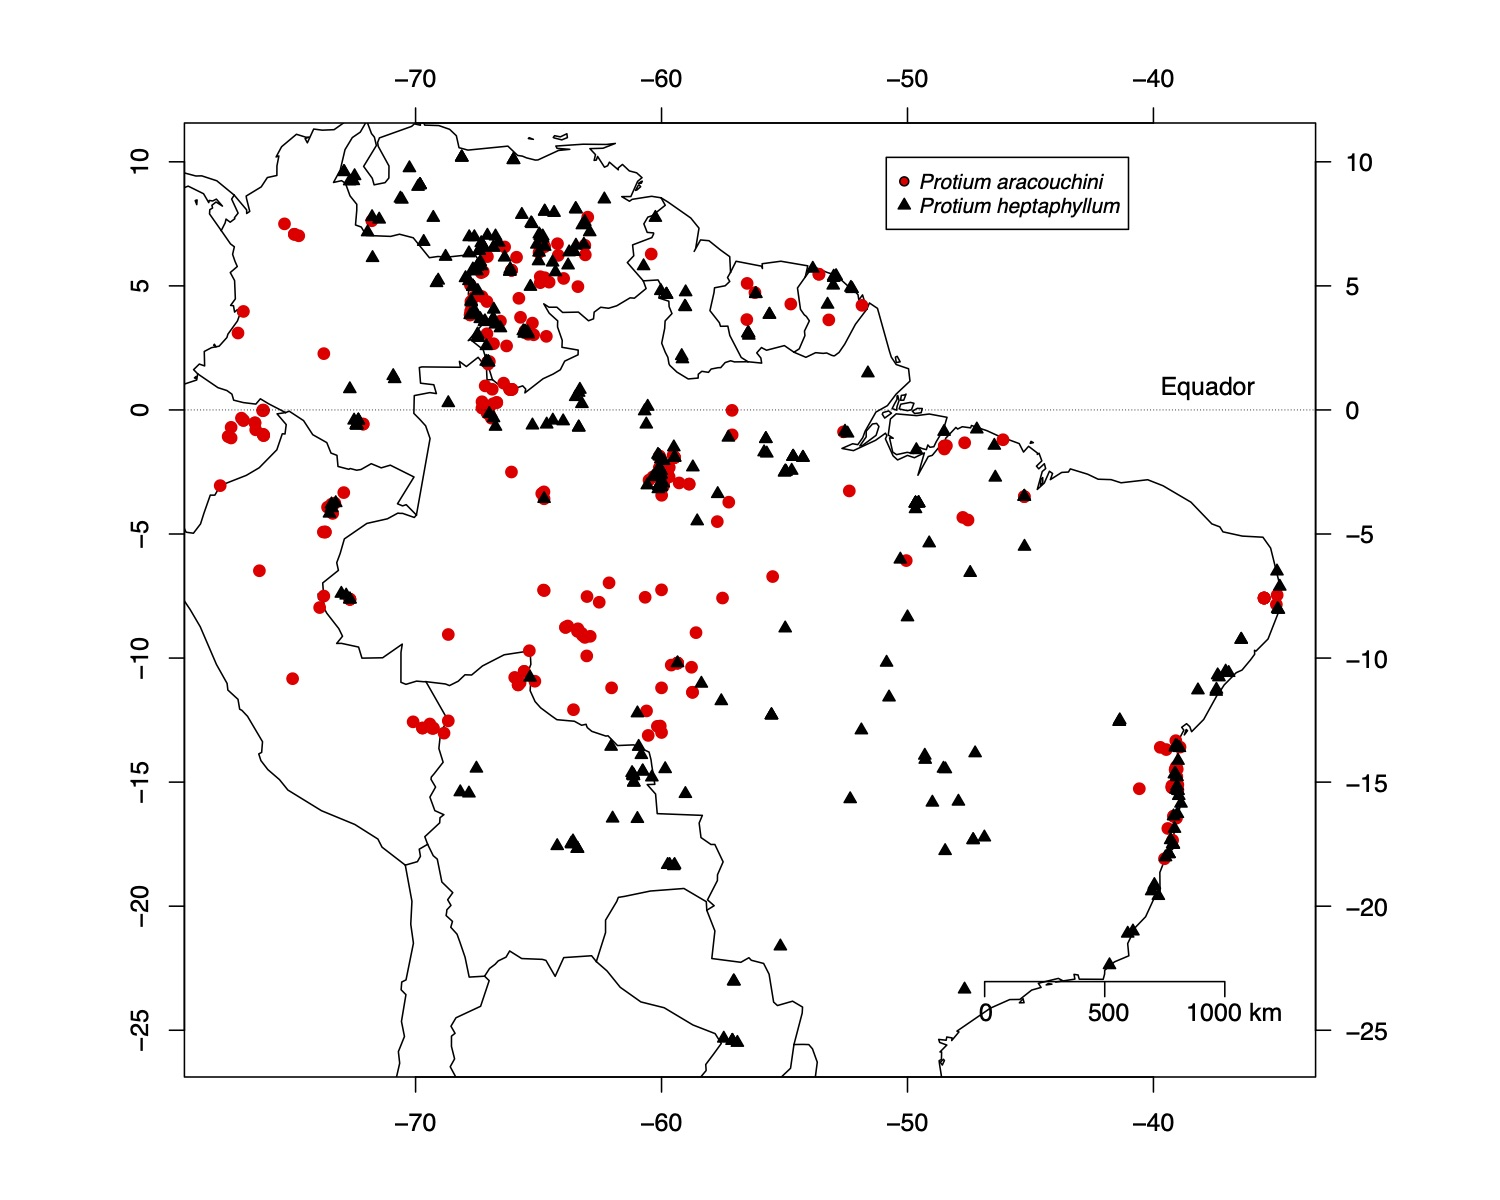 Distribuição geográfica de Protium aracouchini (Aubl.) Marchand e P. heptaphyllum (Aubl.) Marchand segundo dados do herbário do Jardim Botânico de Nova Iorque (NYBG). Dados já desatualizados, baixados em 2015 da base de dados do NYBG.